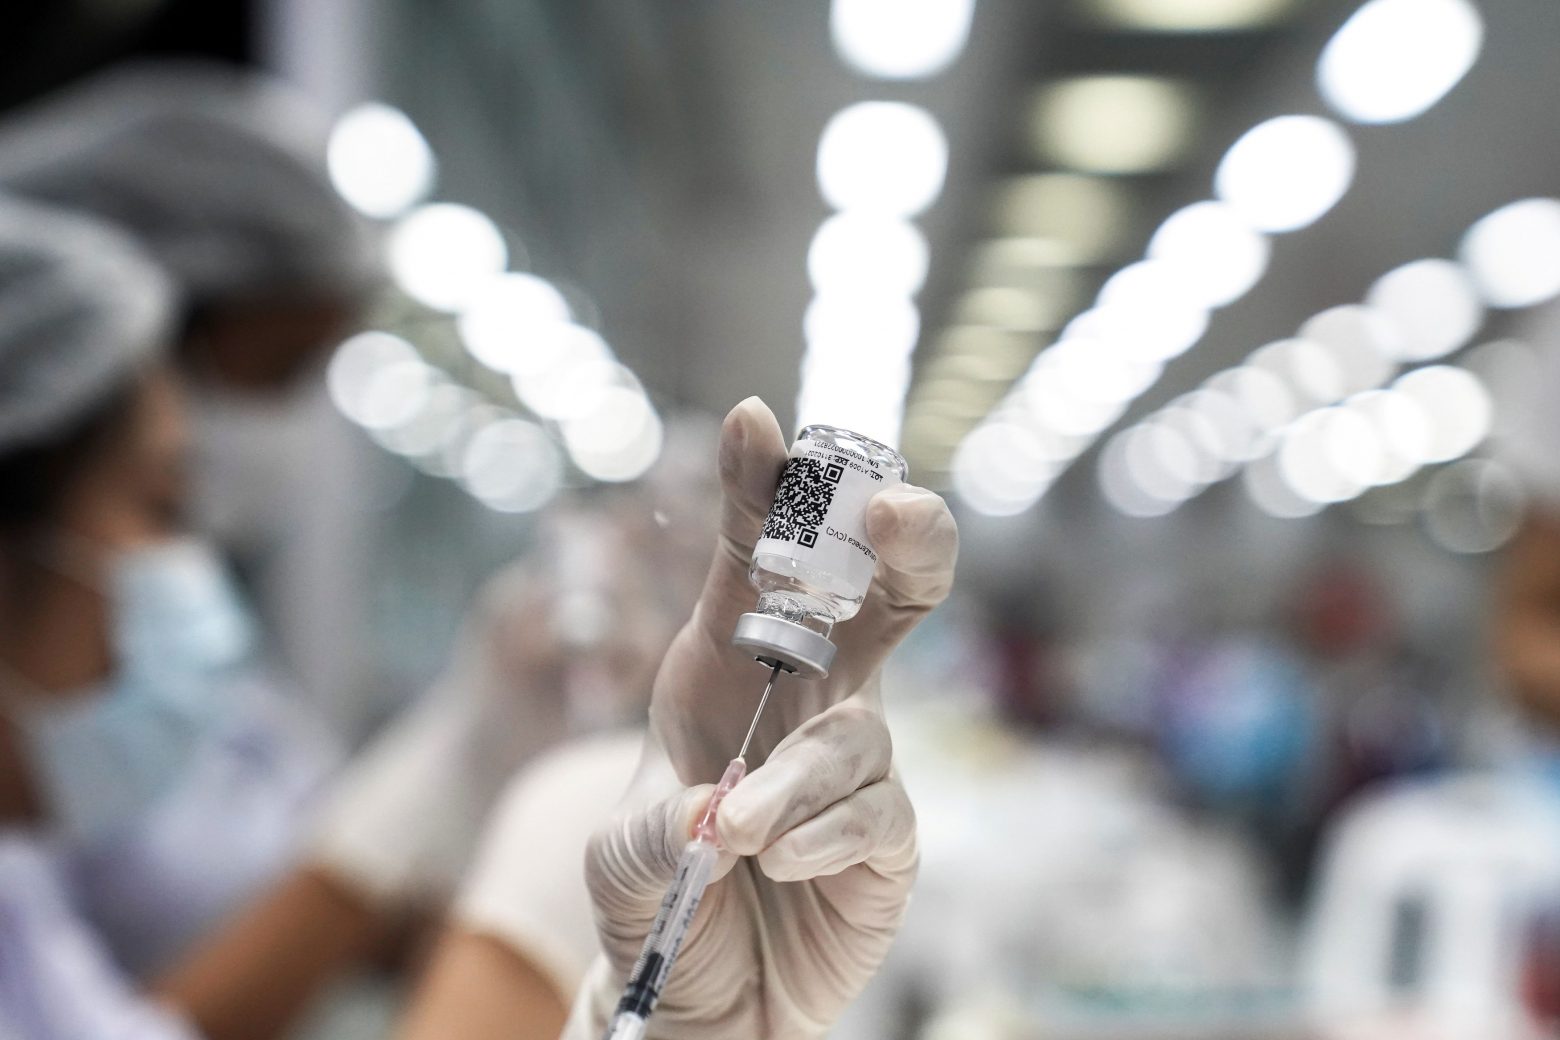 Κοροναϊός: Τα εμβόλια αποτελεσματικά κατά του ινδικού στελέχους Δέλτα  - Το στέλεχος Άλφα προστατεύει απο την επαναμόλυνση